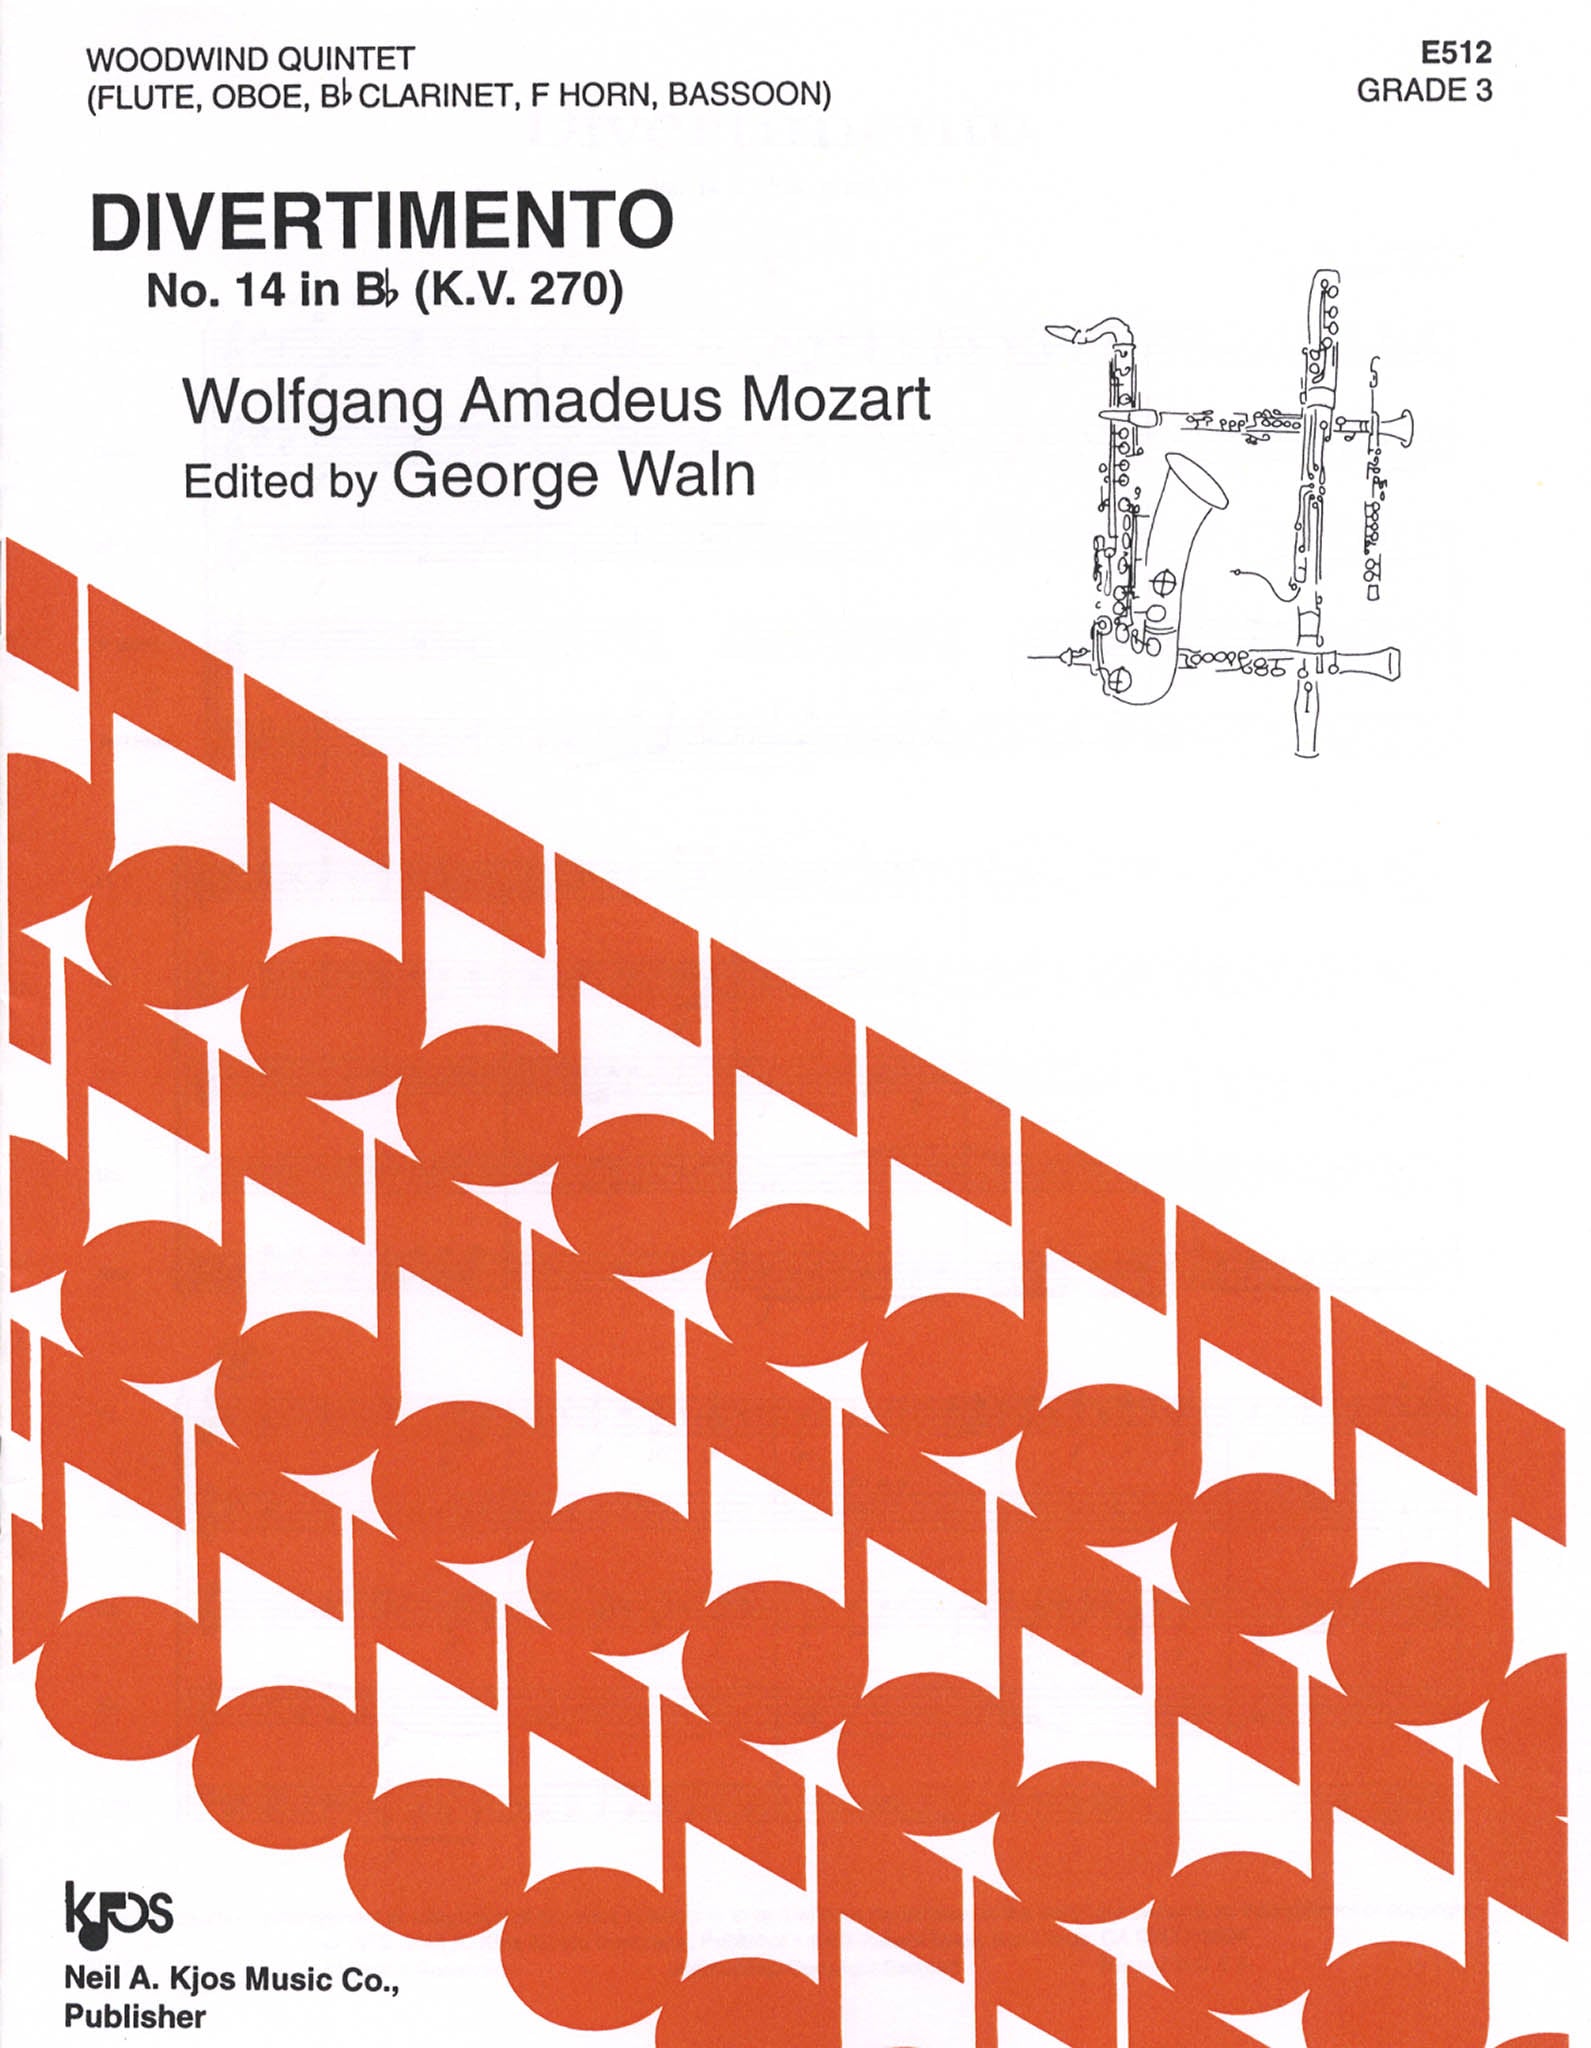 Mozart Divertimento No. 14, K. 270 wind quintet arrangement cover